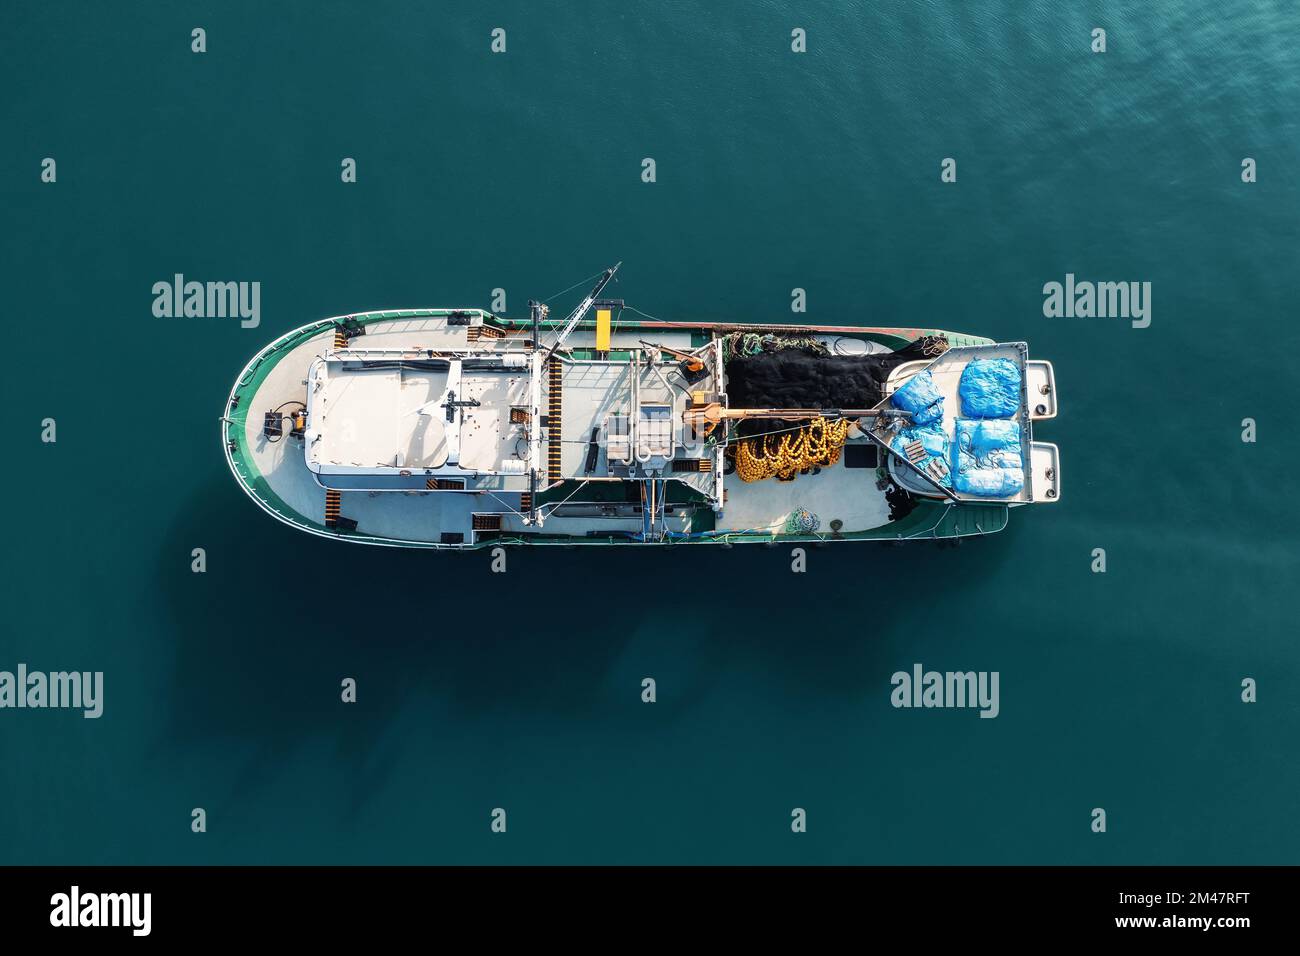 Vista superior aérea del barco de pesca desde el drone en la superficie del mar. Industria pesquera y del marisco. Foto de stock